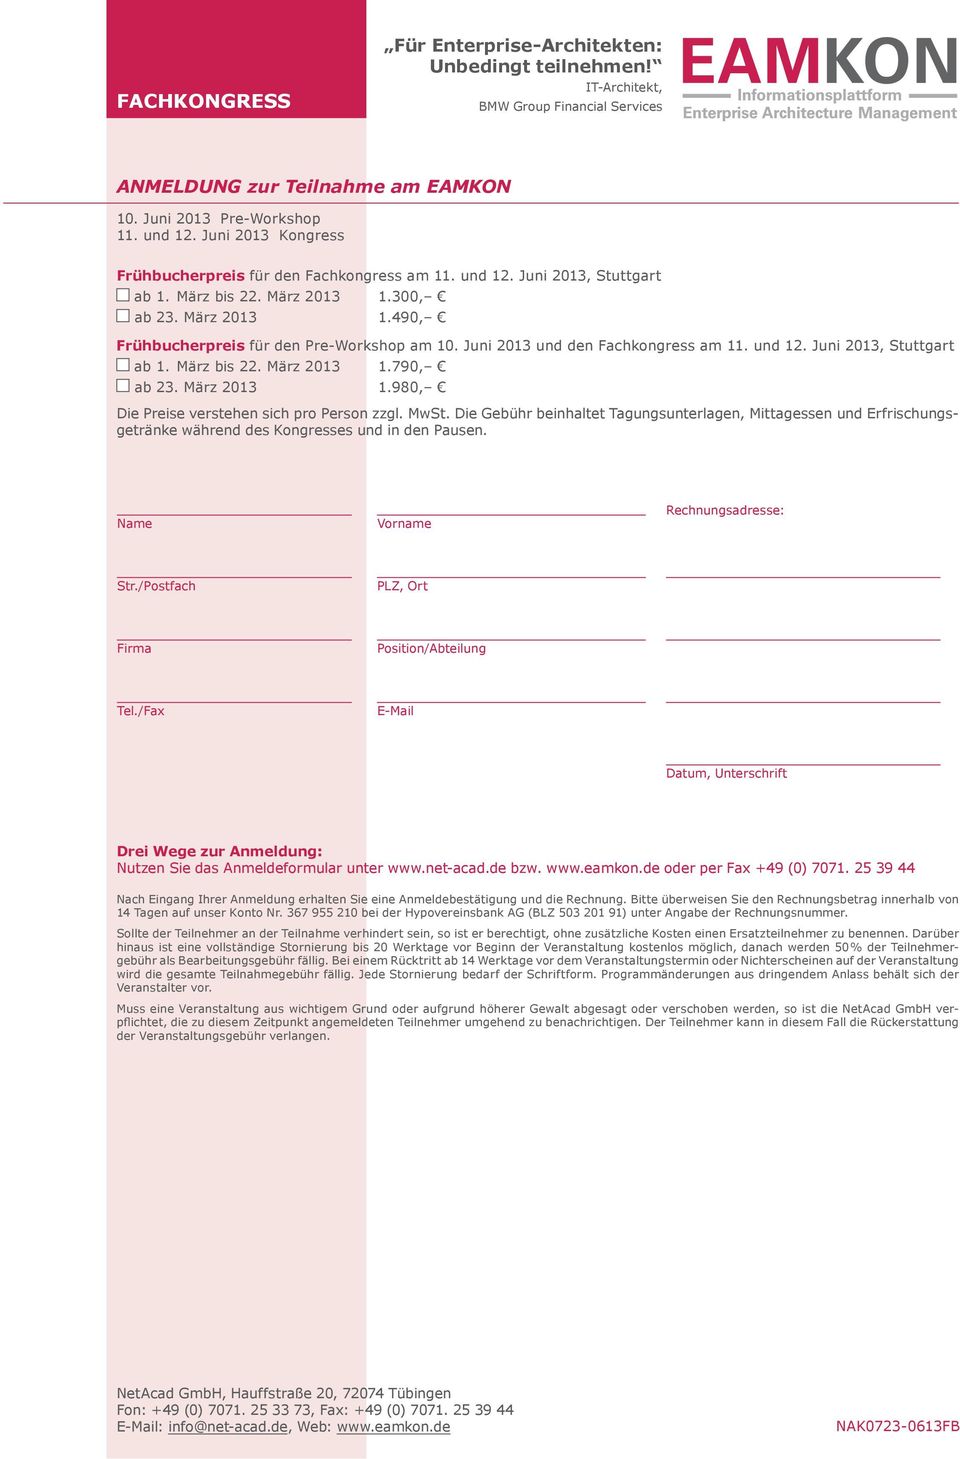 Juni 2013 und den Fachkongress am 11. und 12. Juni 2013, Stuttgart ab 1. März bis 22. März 2013 1.790, ab 23. März 2013 1.980, Die Preise verstehen sich pro Person zzgl. MwSt.